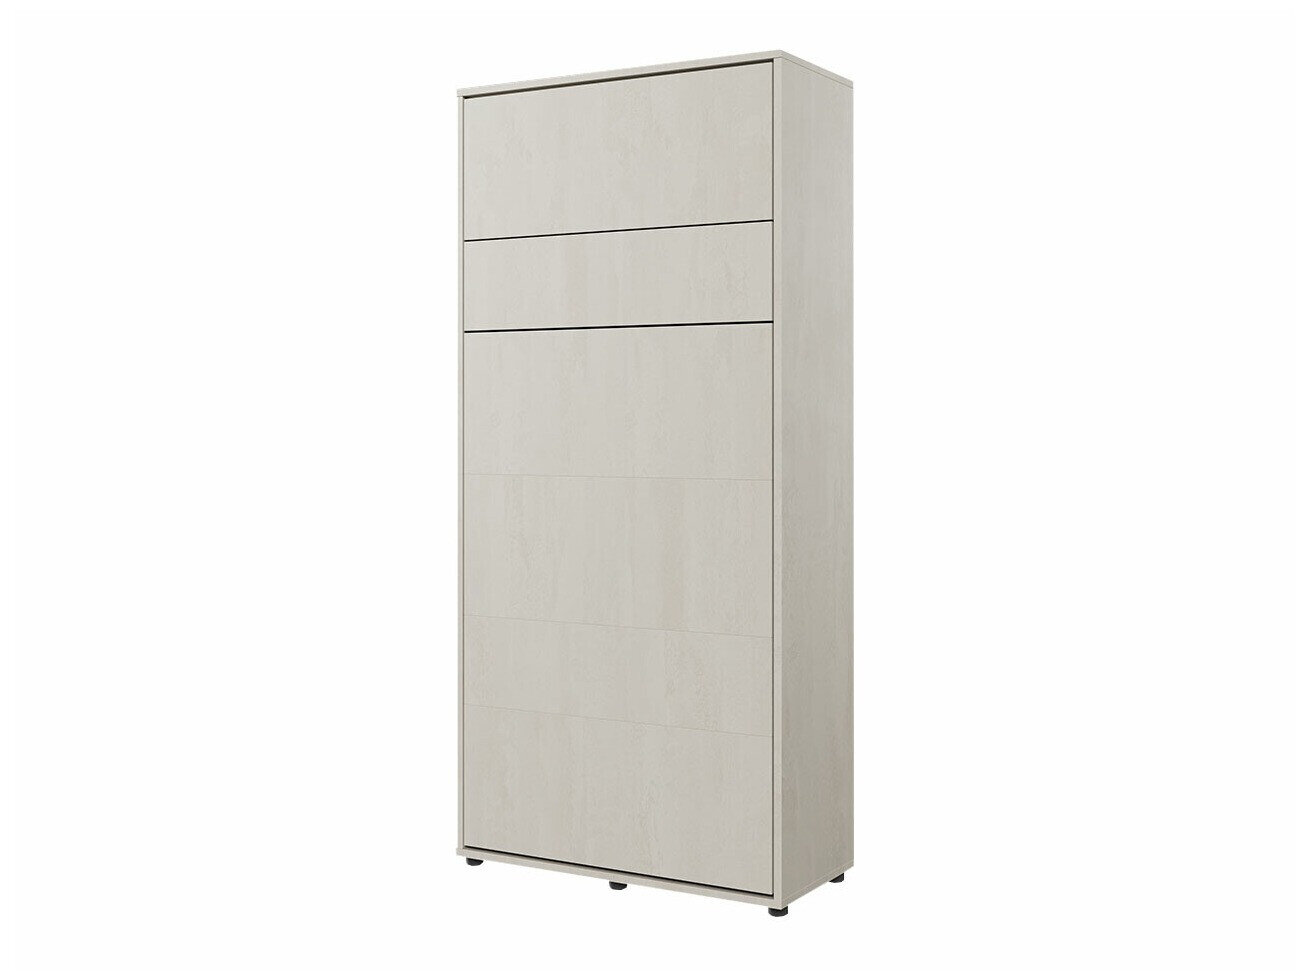 Lit armoire escamotable vertical blanc brillant CONCEPT PRO